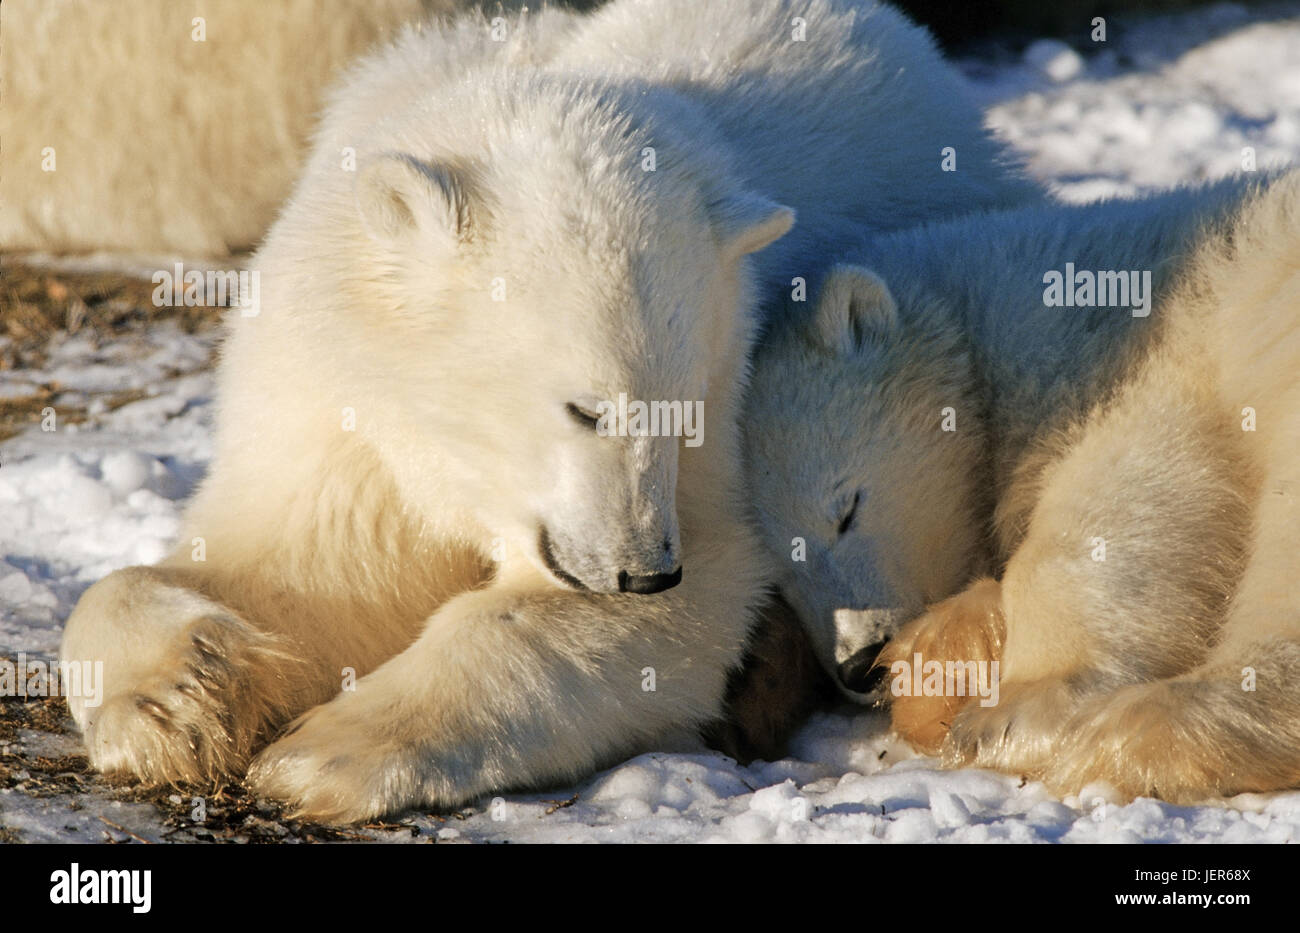 Two small polar bears, Ursus maritimus in the Hudson Bay, Canada, Zwei kleine Eisbären (Ursus maritimus) an der Hudson Bay - Kanada Stock Photo